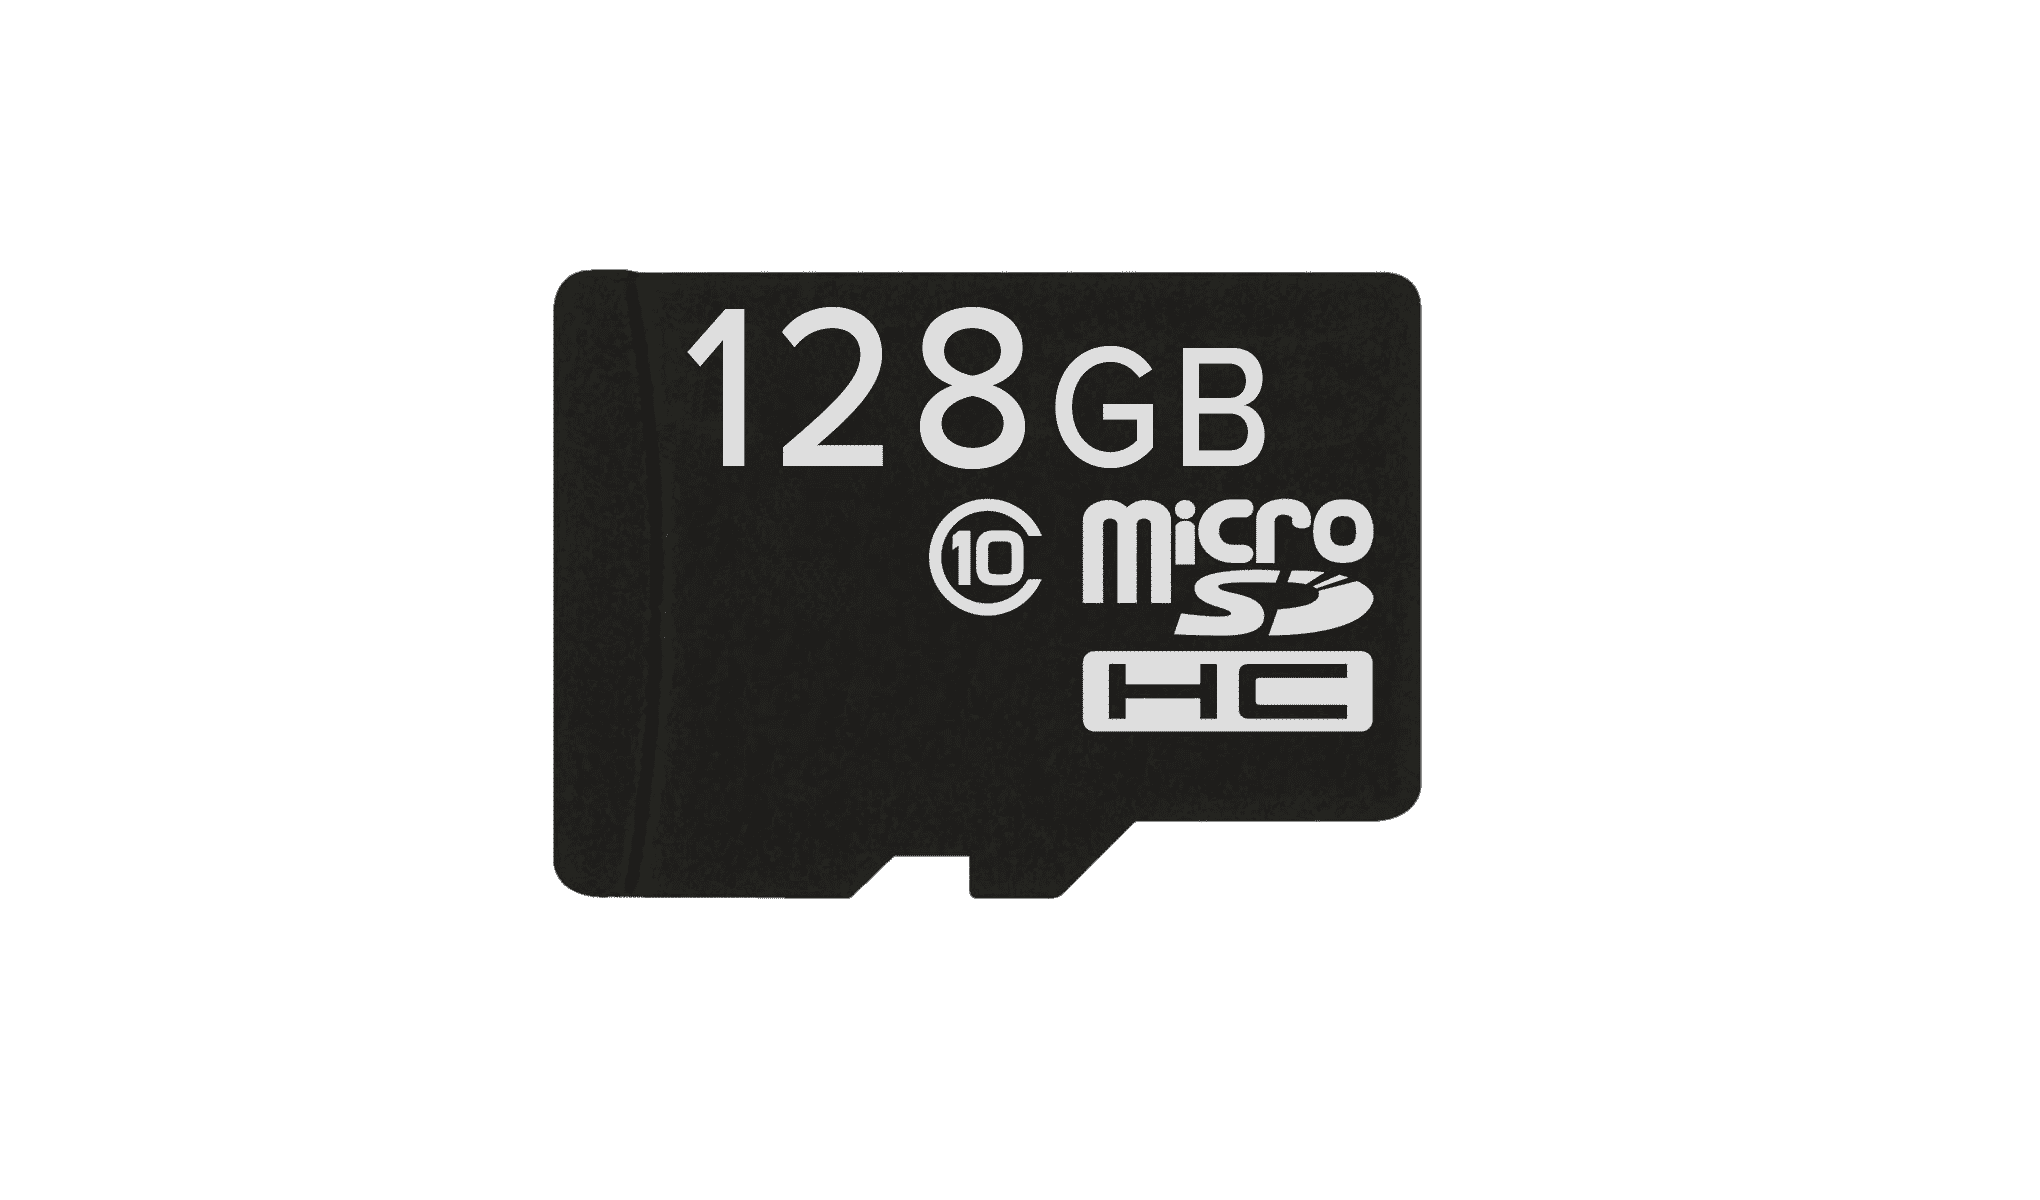 Scheda MicroSD/TF da 128GB per smartphone, tablet e laptop